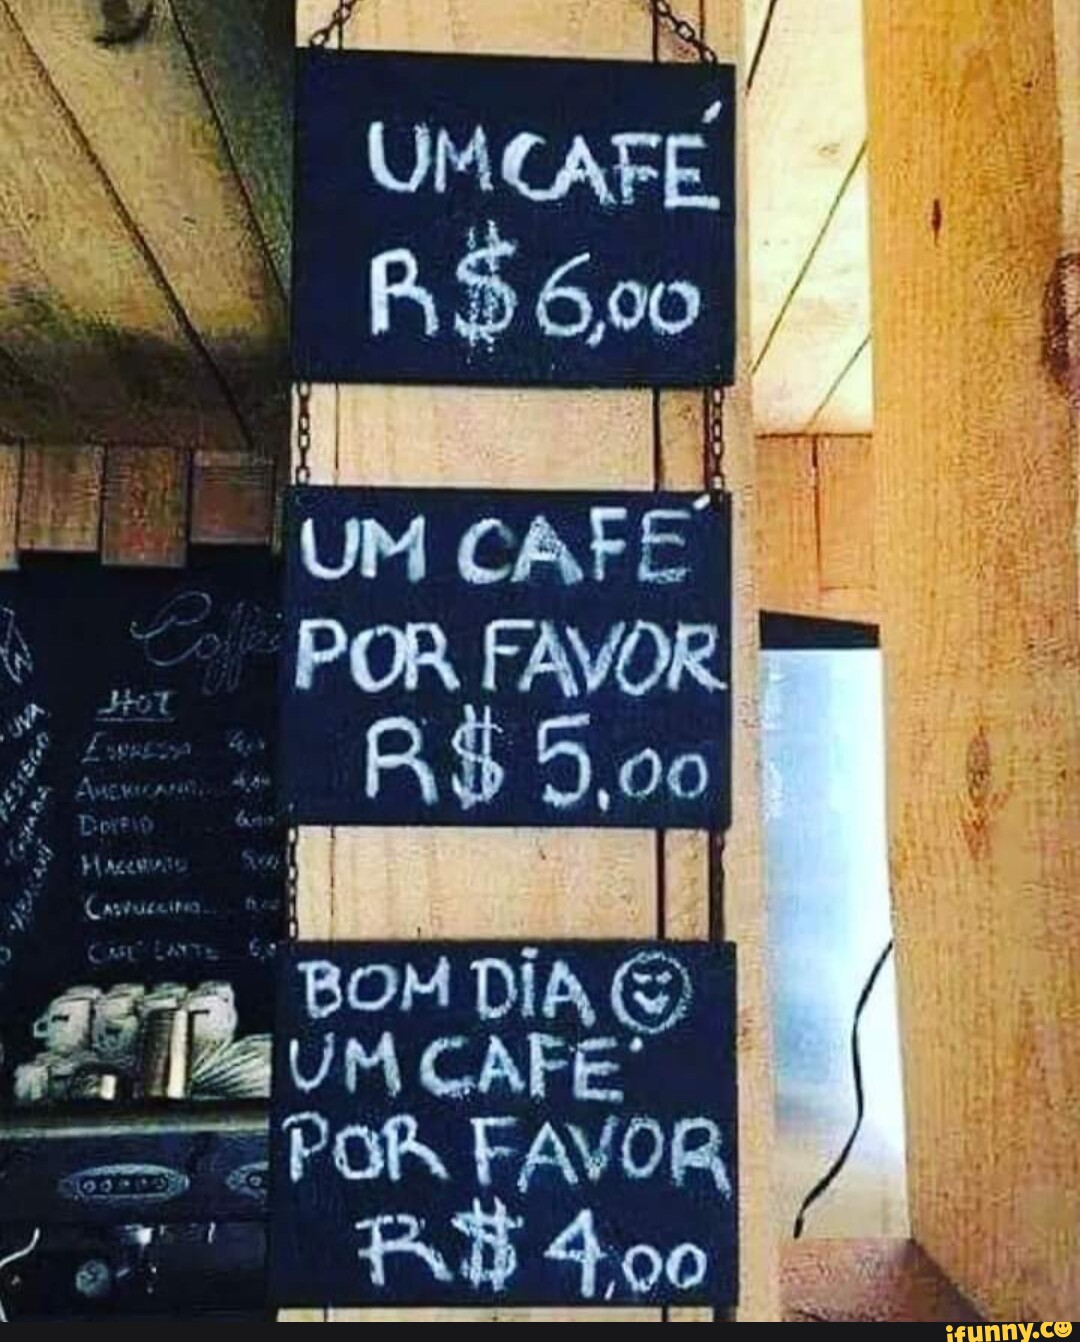 UMCAFE, UM CAFE BOM DIA UM CAFE: POR FAVOR AB Soo. RR - iFunny Brazil